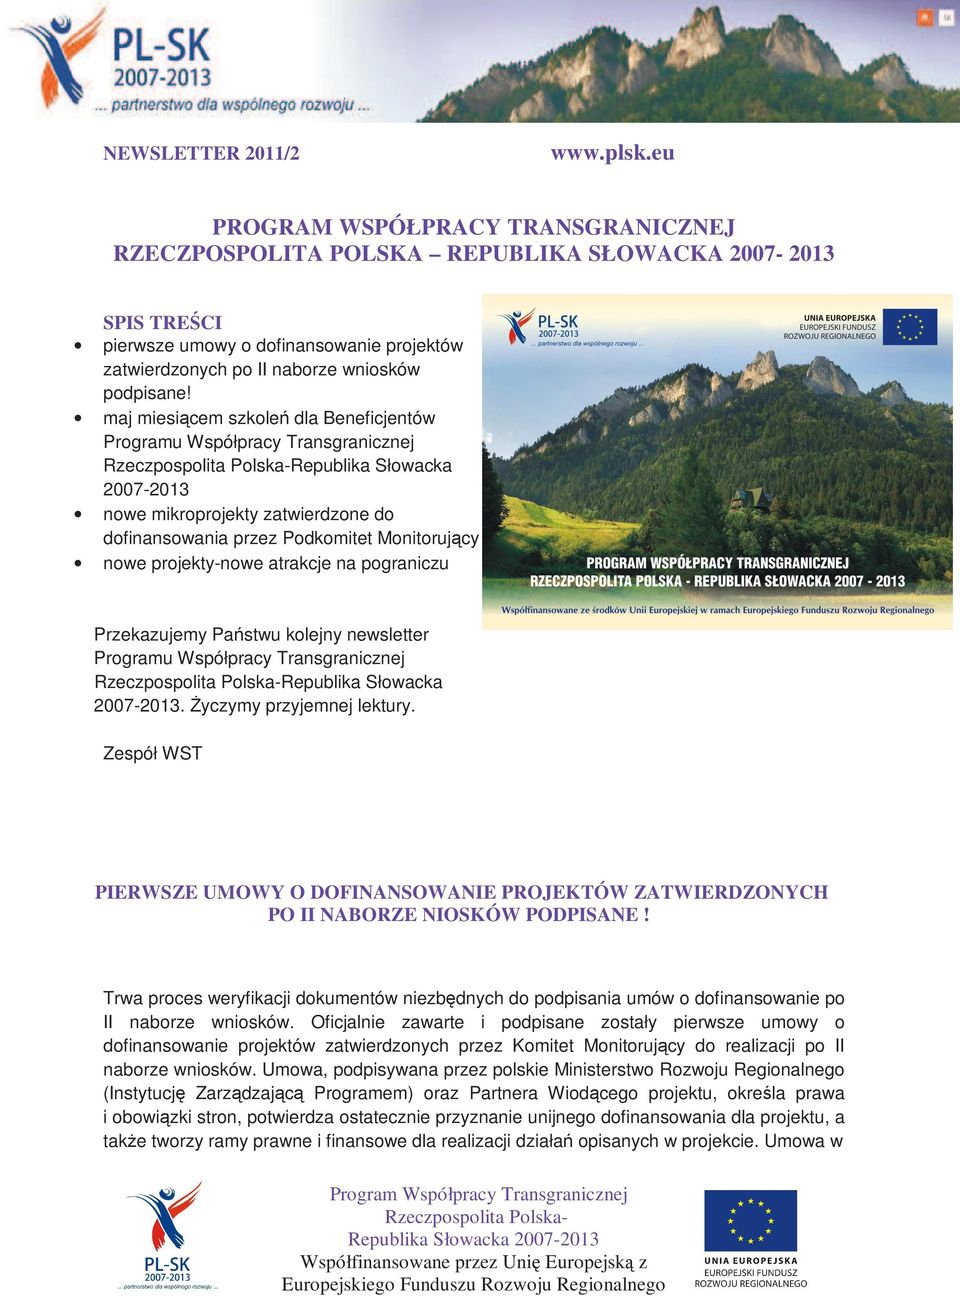 maj miesiącem szkoleń dla Beneficjentów Programu Współpracy Transgranicznej Republika Słowacka 2007-2013 nowe mikroprojekty zatwierdzone do dofinansowania przez Podkomitet Monitorujący nowe